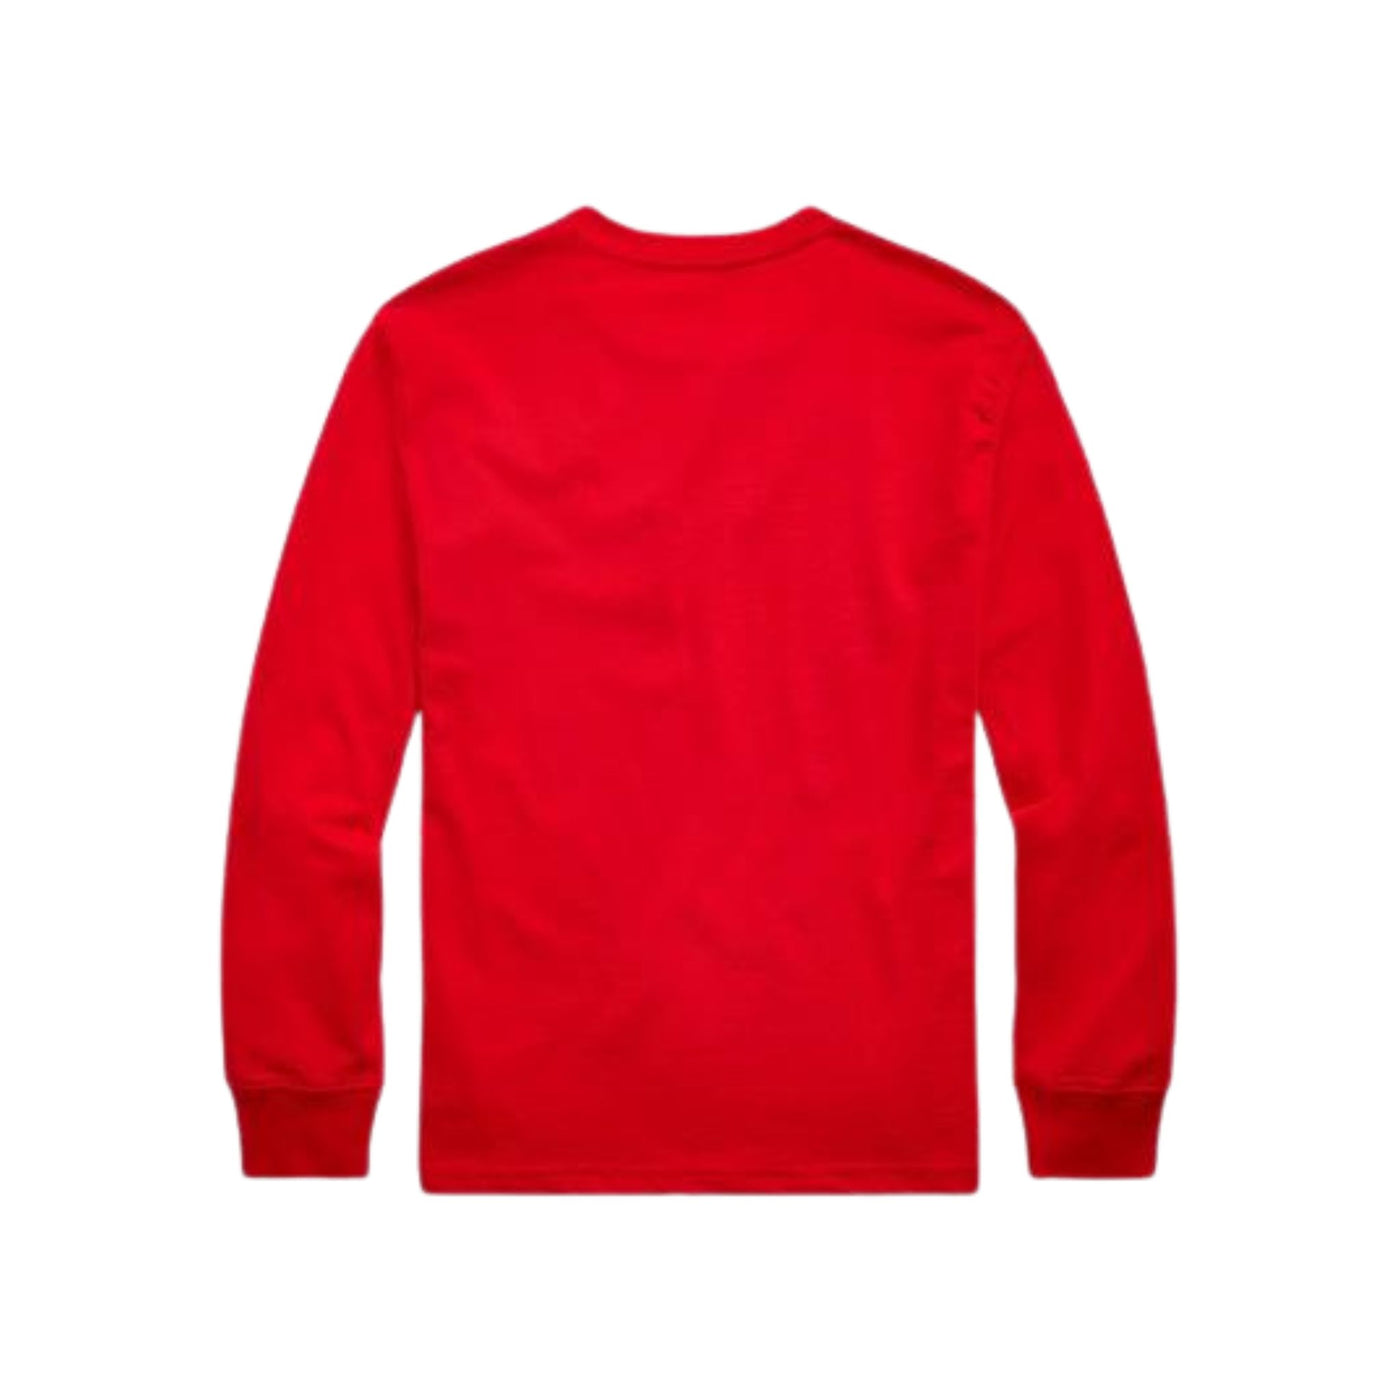 Maglietta bambino rossa firmata Polo Ralph Lauren vista retro